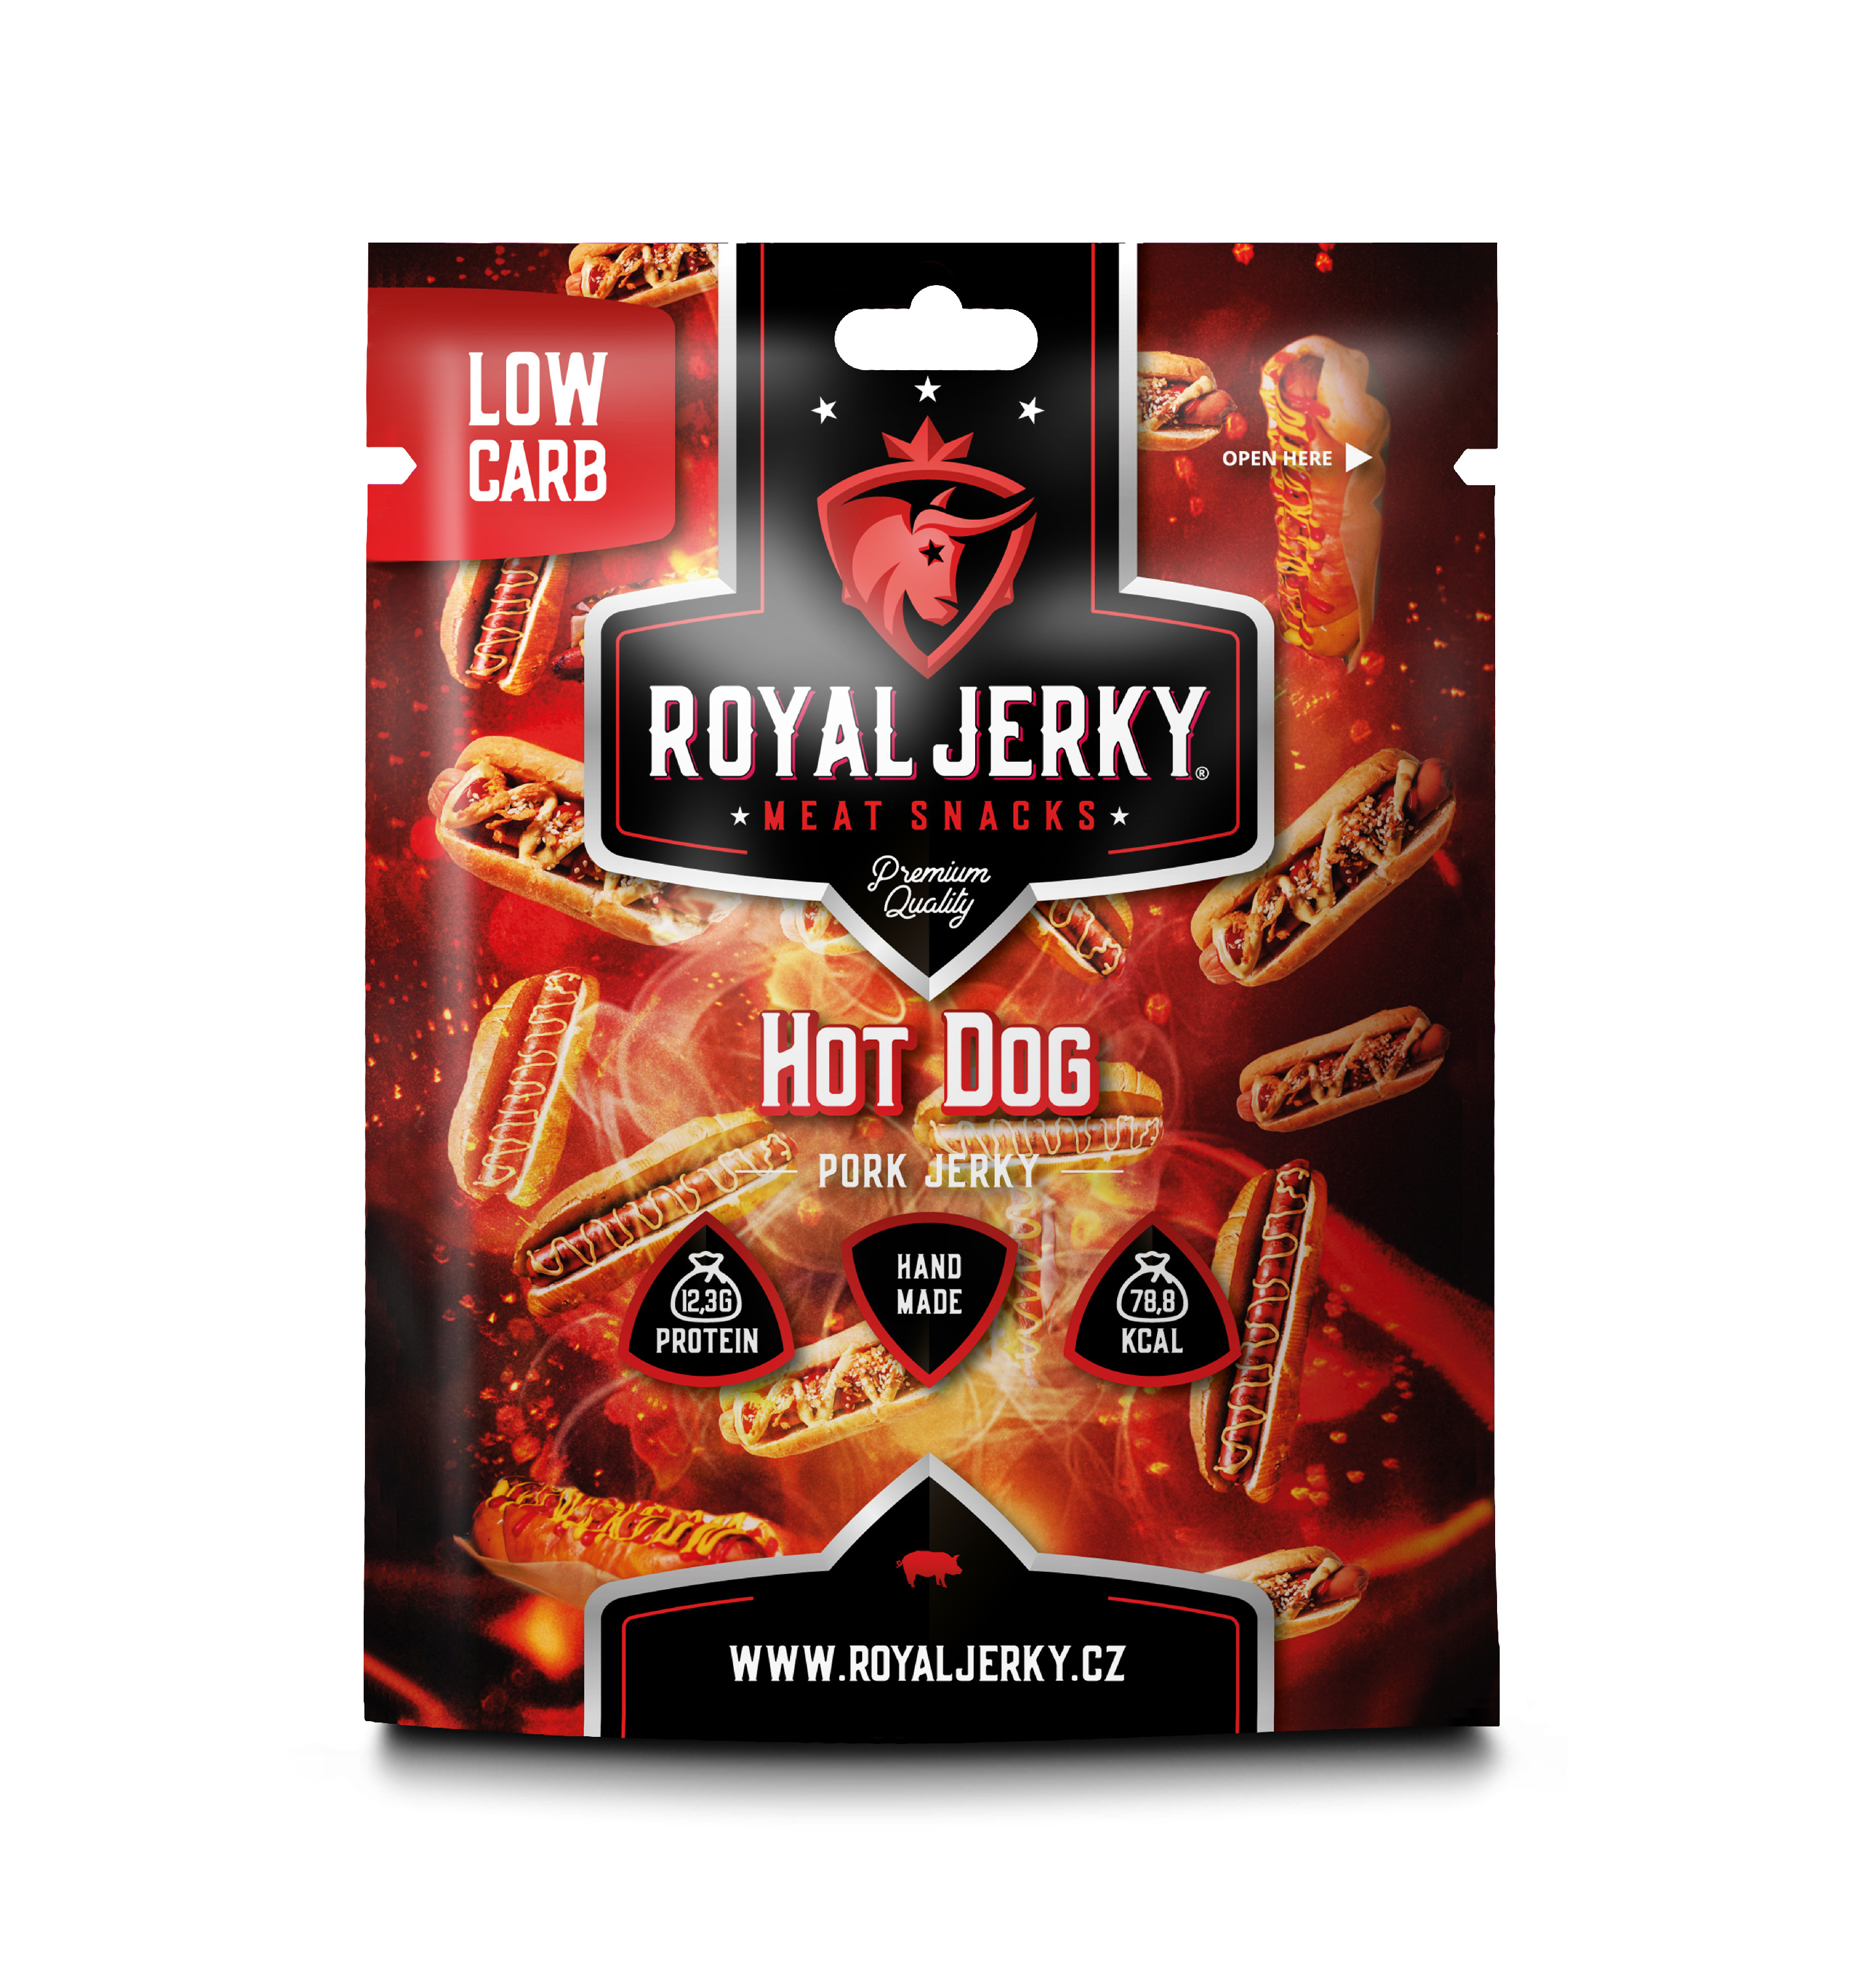 Royal Jerky Hot dog (vepřové sušené maso s příchutí hot dog) - POSLEDNÍ ŠANCE